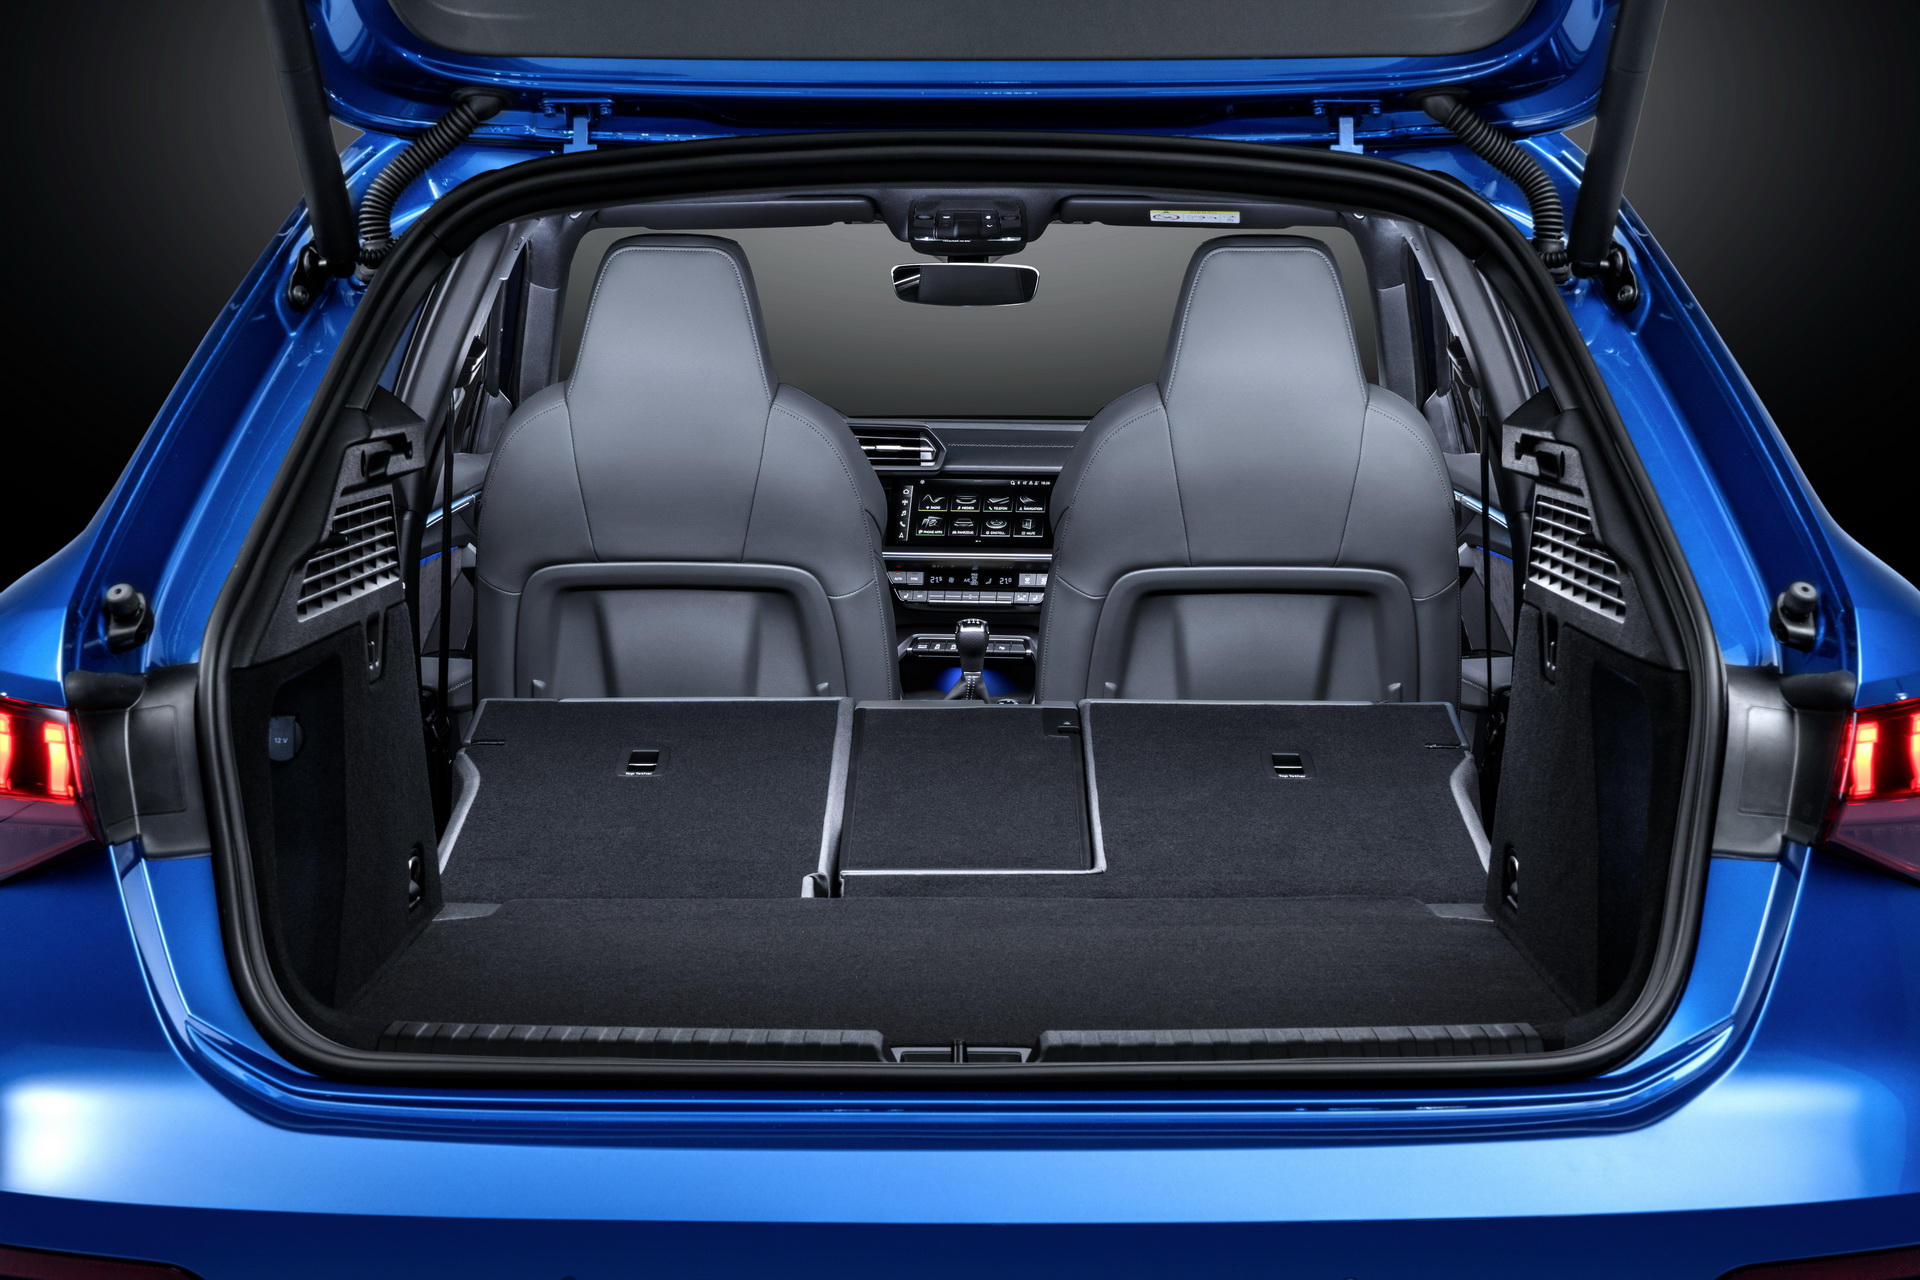 2020 Audi A3 Sportback tanıtıldı: Daha modern ve aerodinamik tasarım